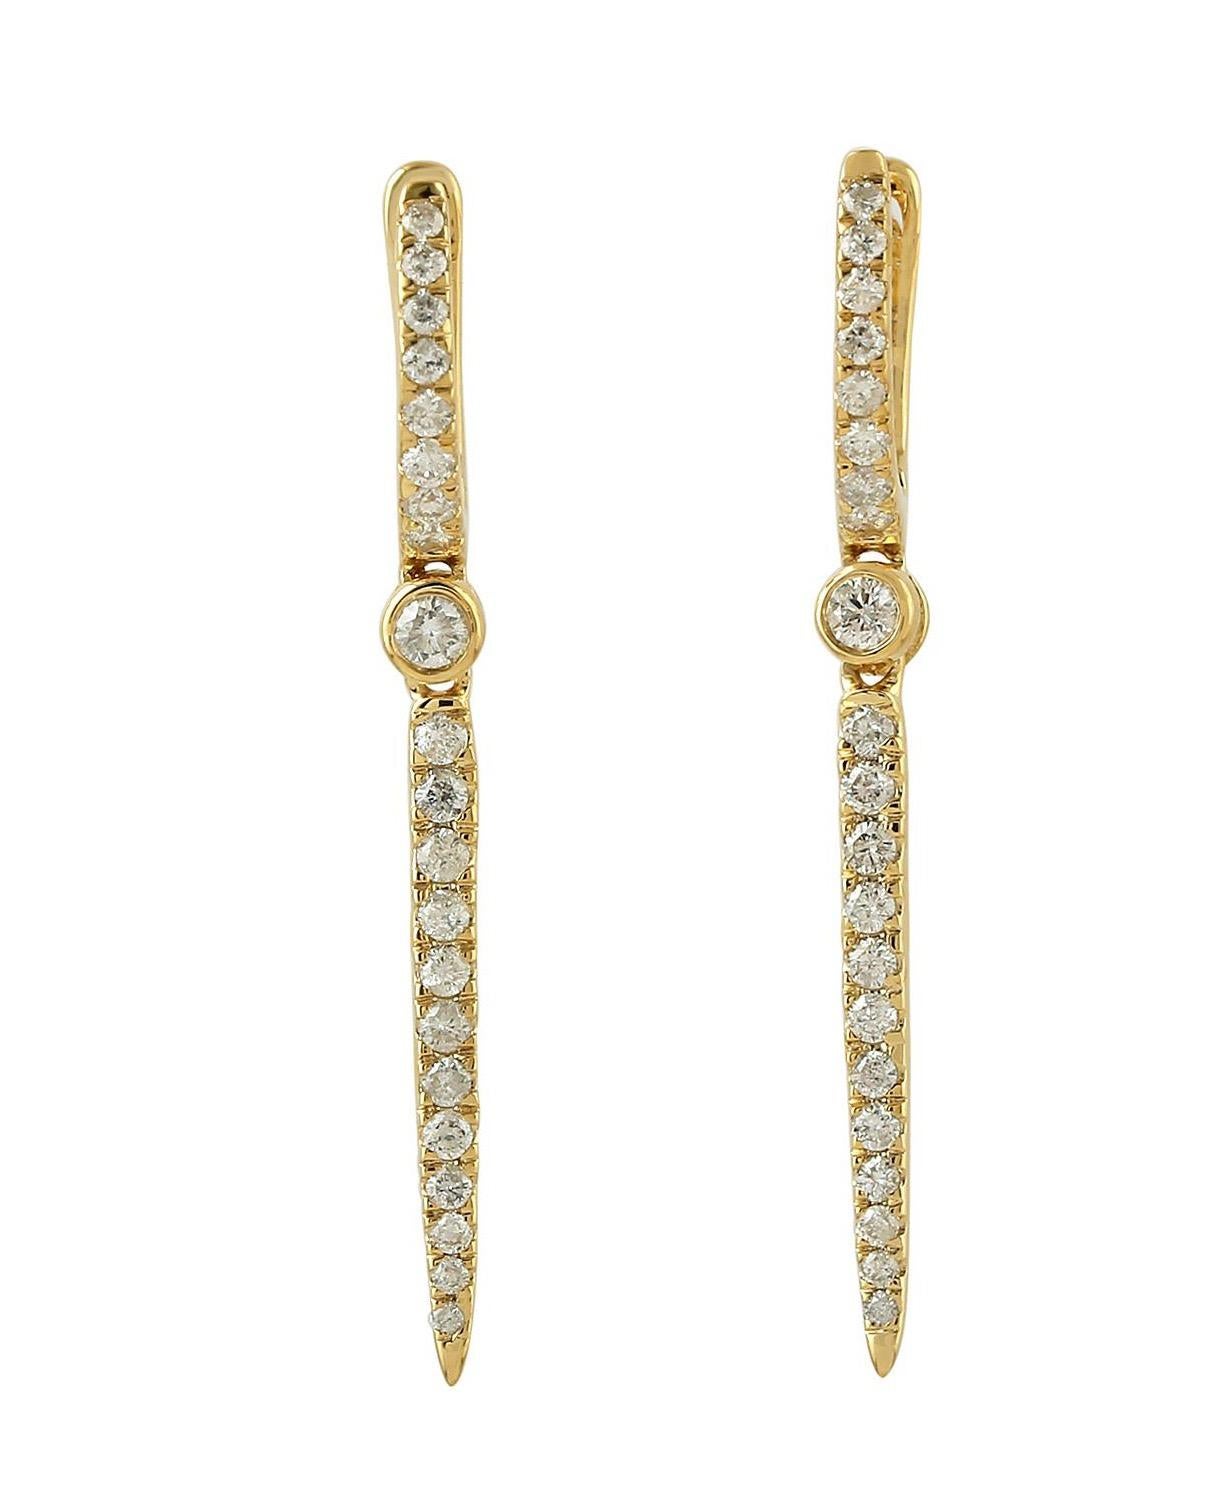 Diese aus 14-karätigem Gold handgefertigten Ohrringe sind mit funkelnden Diamanten von 0,49 Karat besetzt. Auch in Weißgold und Roségold erhältlich.

FOLLOW  MEGHNA JEWELS Storefront, um die neueste Collection'S und exklusive Stücke zu sehen. 